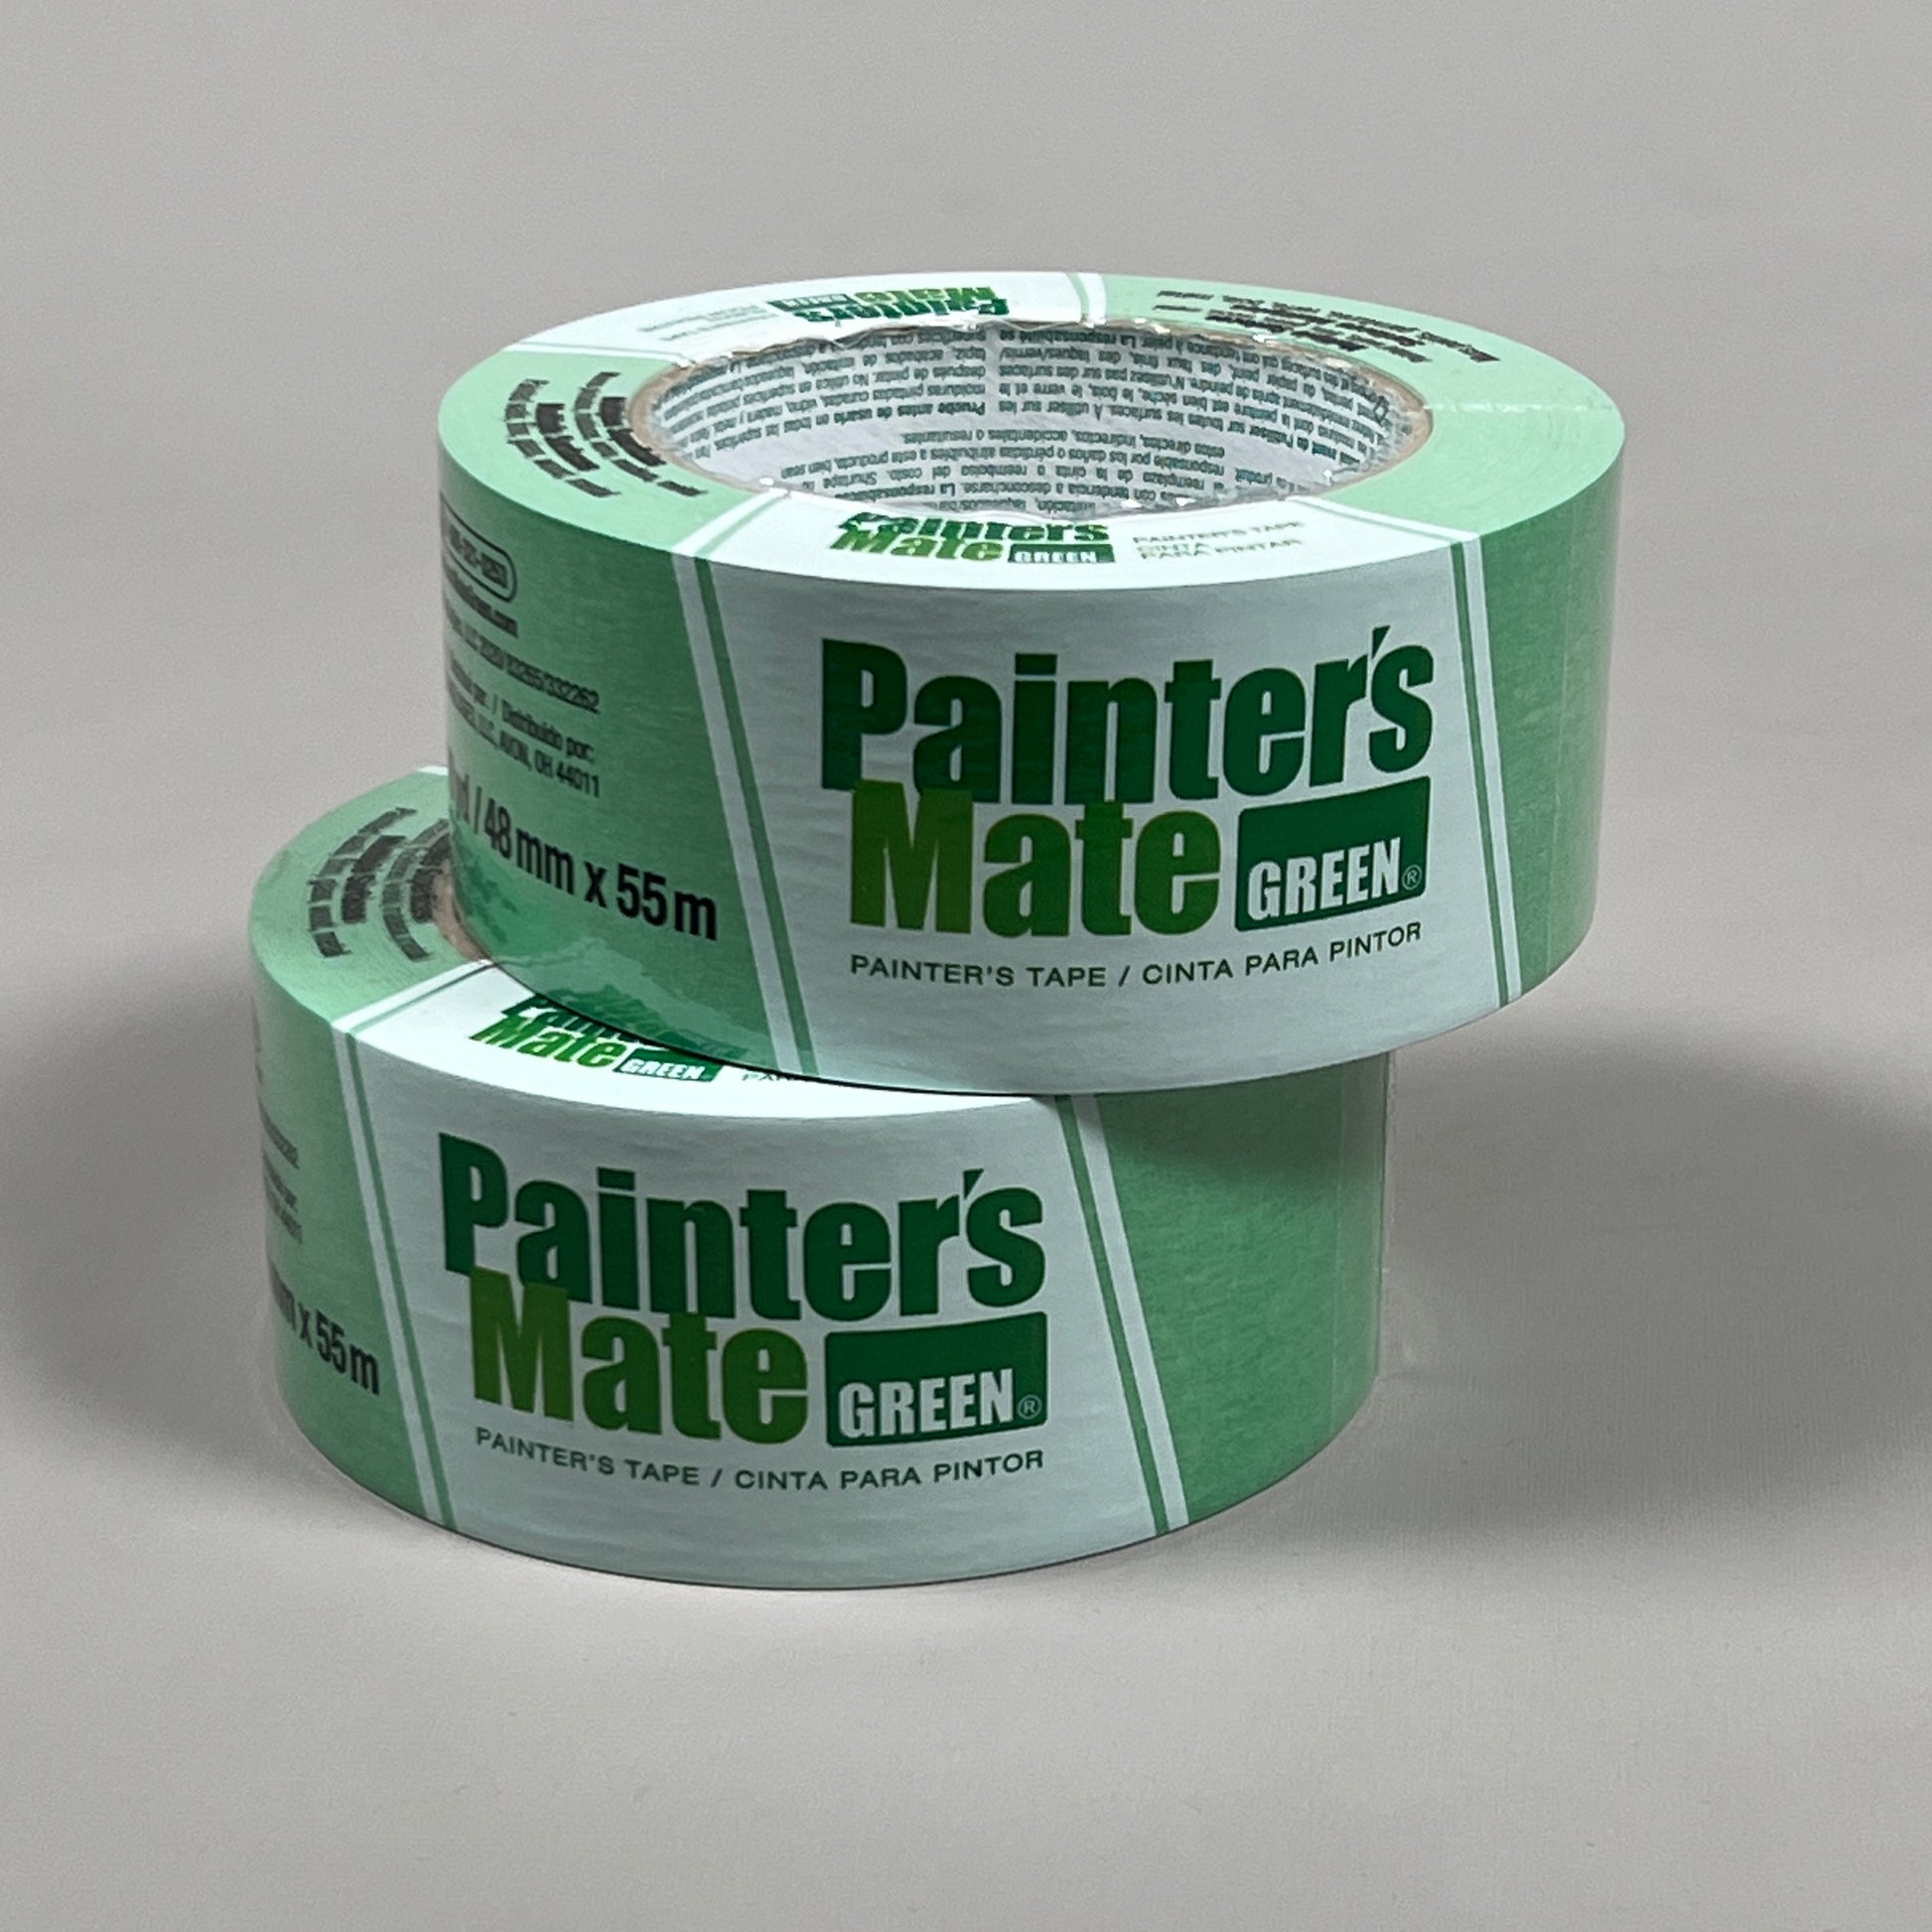 Shurtape Painter's Mate Green Painter's Tape, 36 mm Width x 55 m